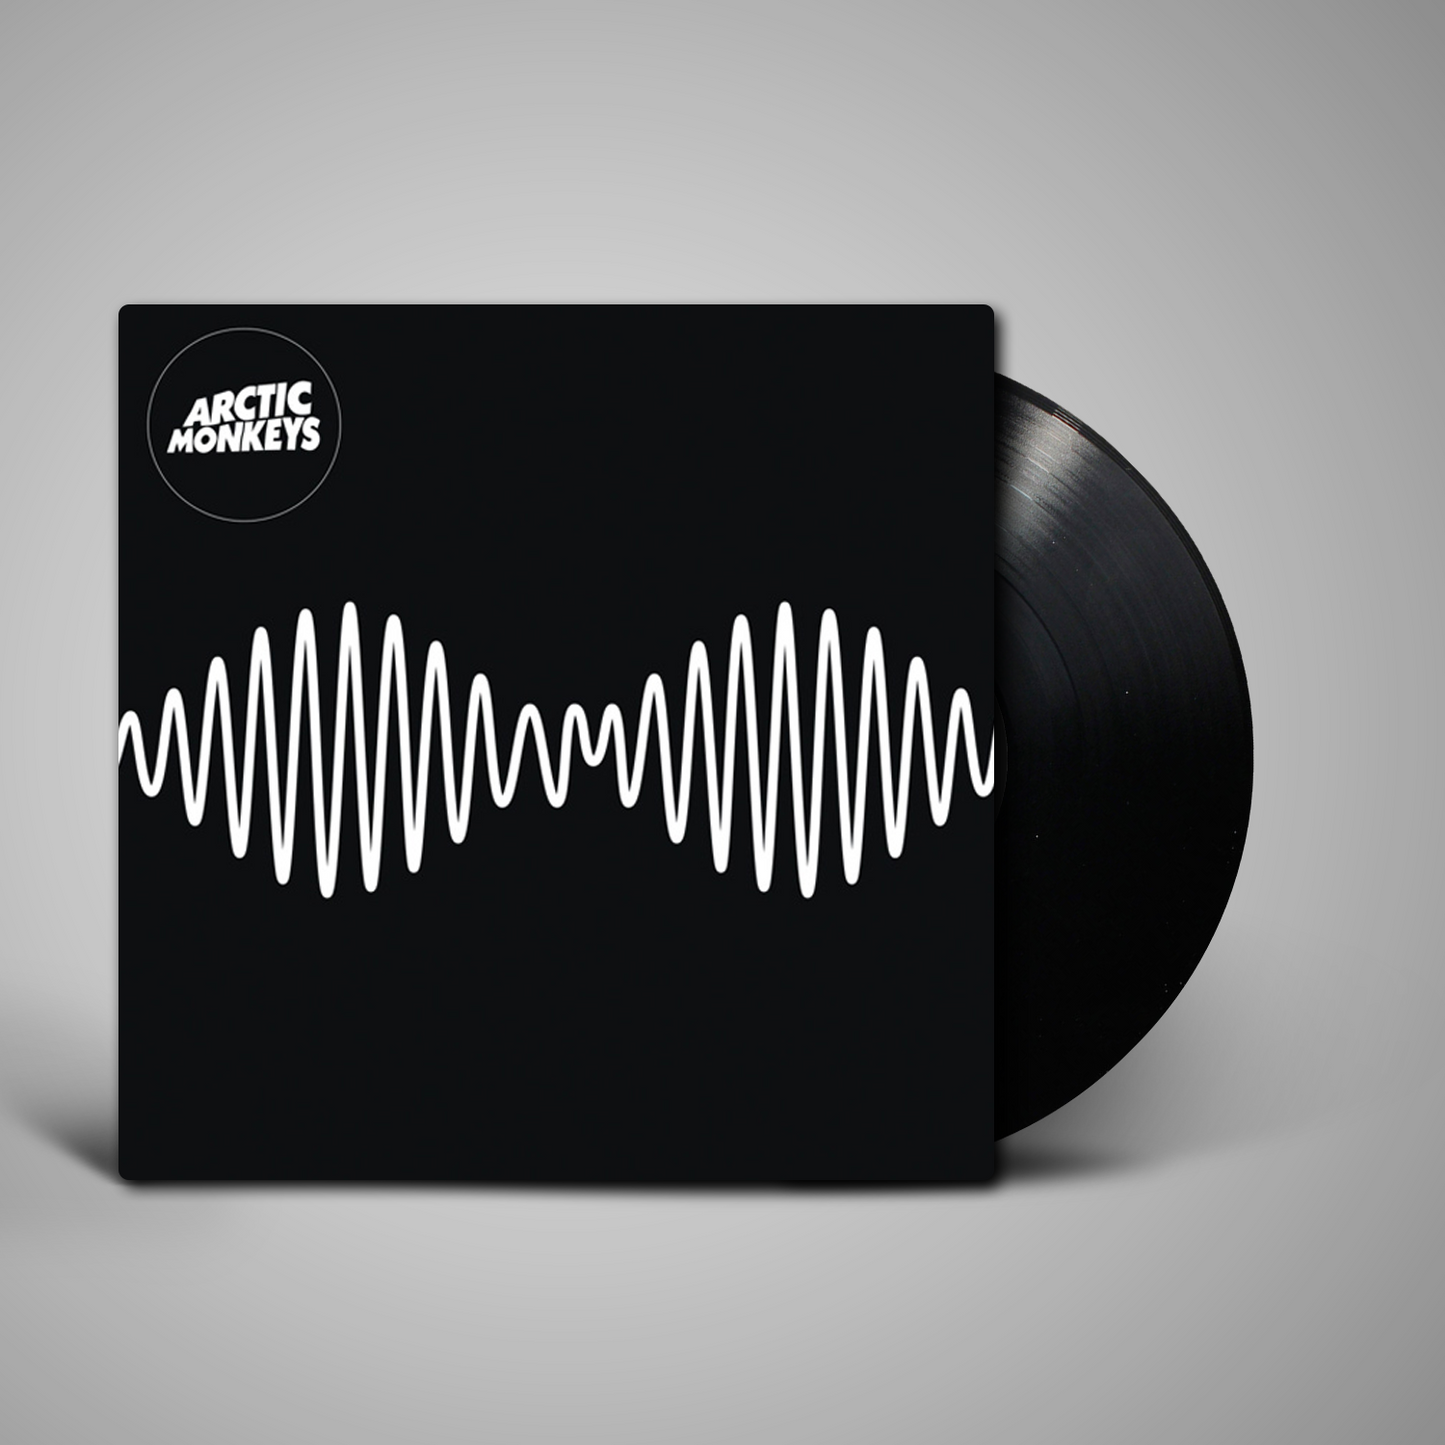 Discos Eternos - Arctic Monkeys A.M Vinilo Lp Nuevo